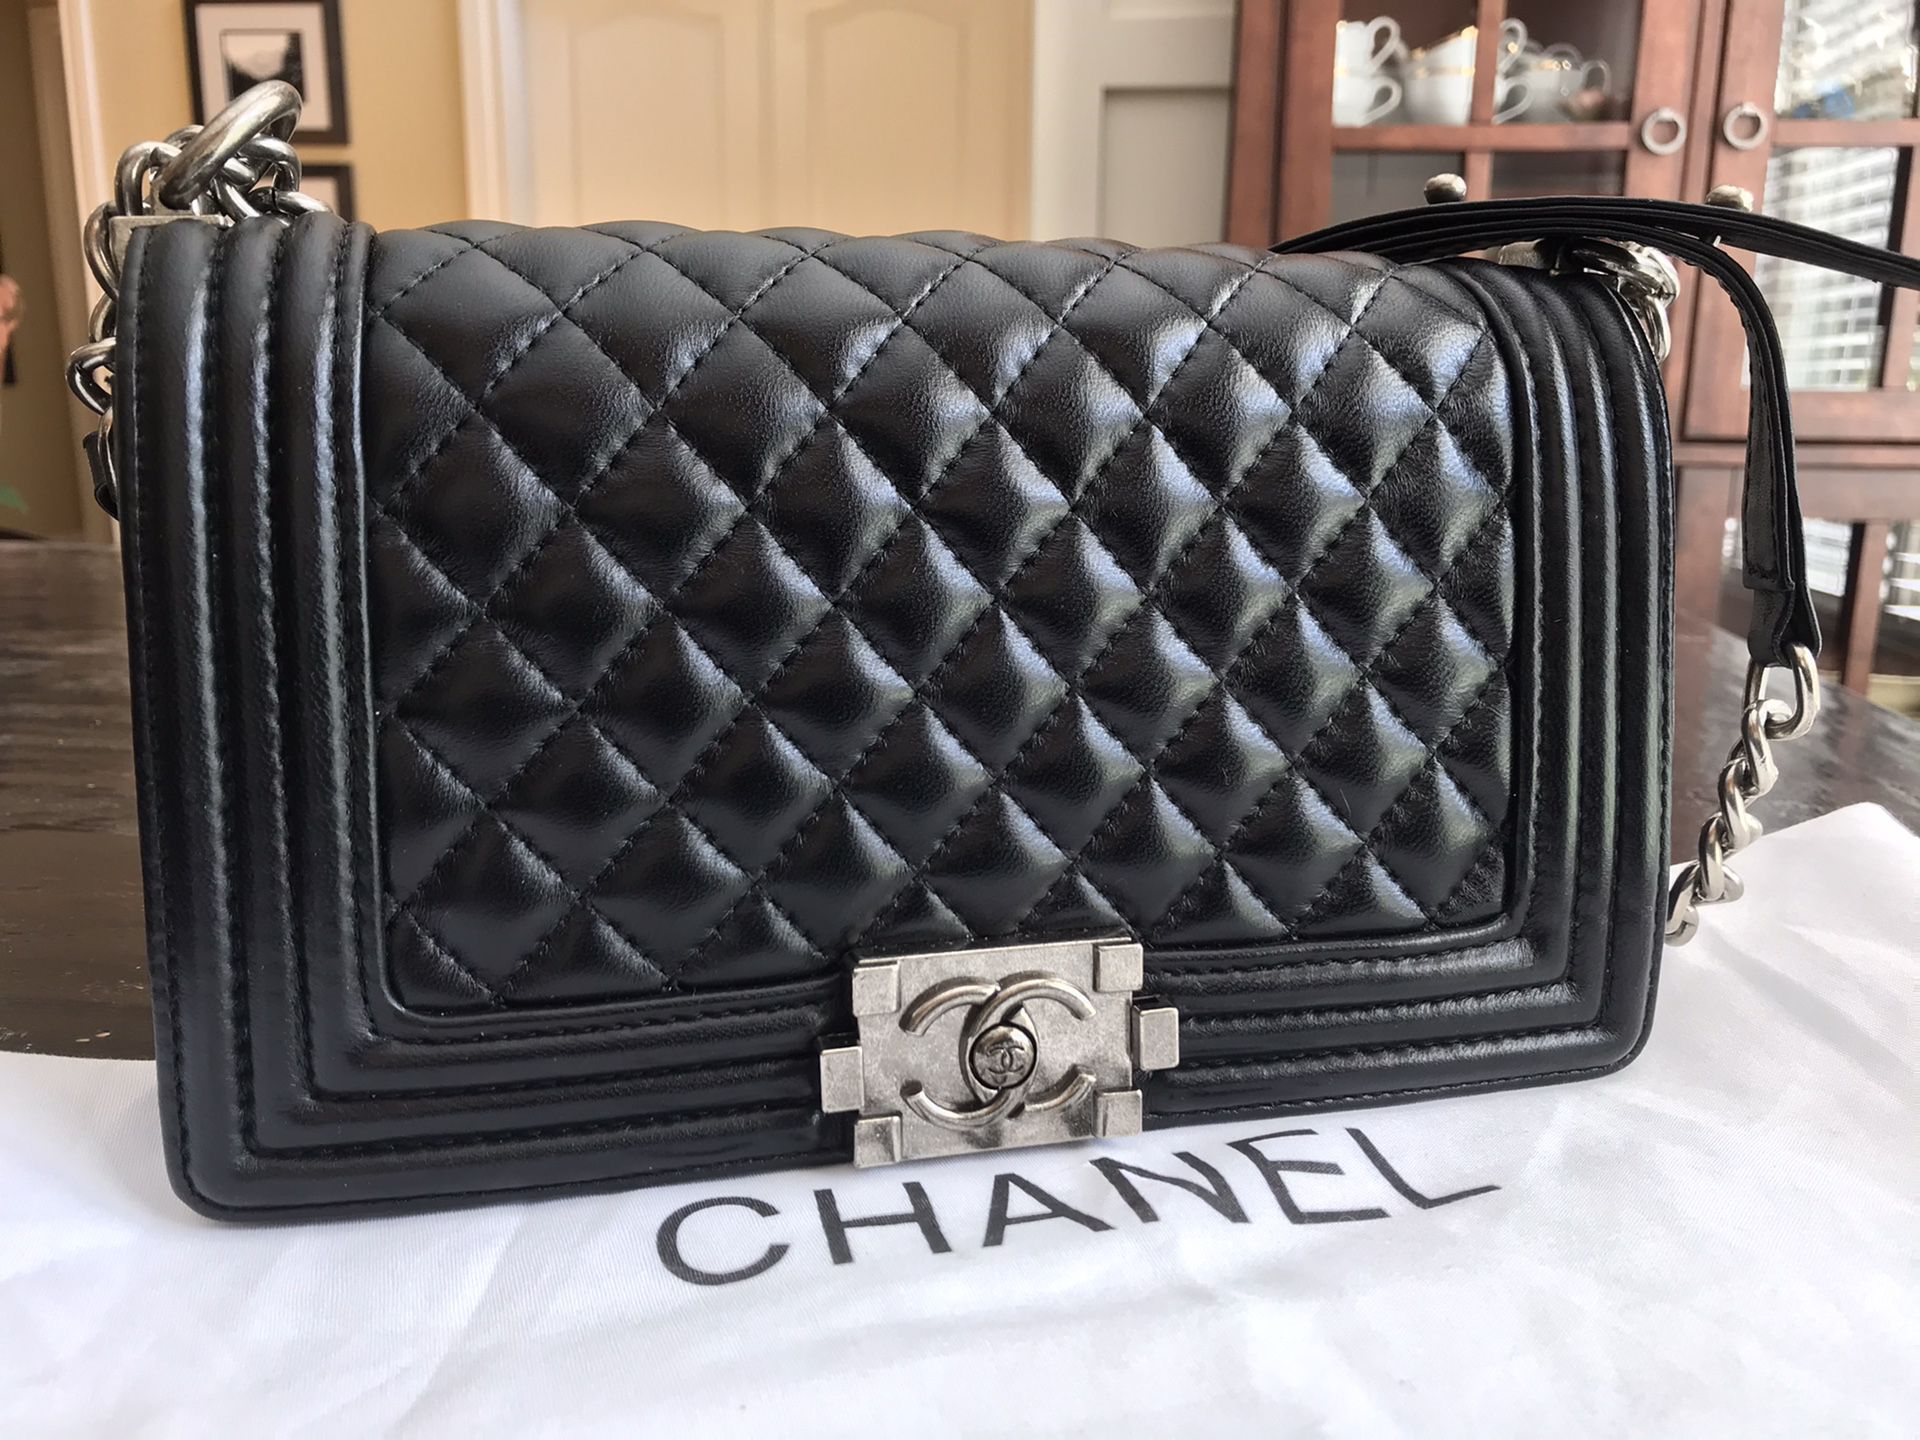 Chanel Black Lambskin Medium Boyfriend Bag Purse Crossbody